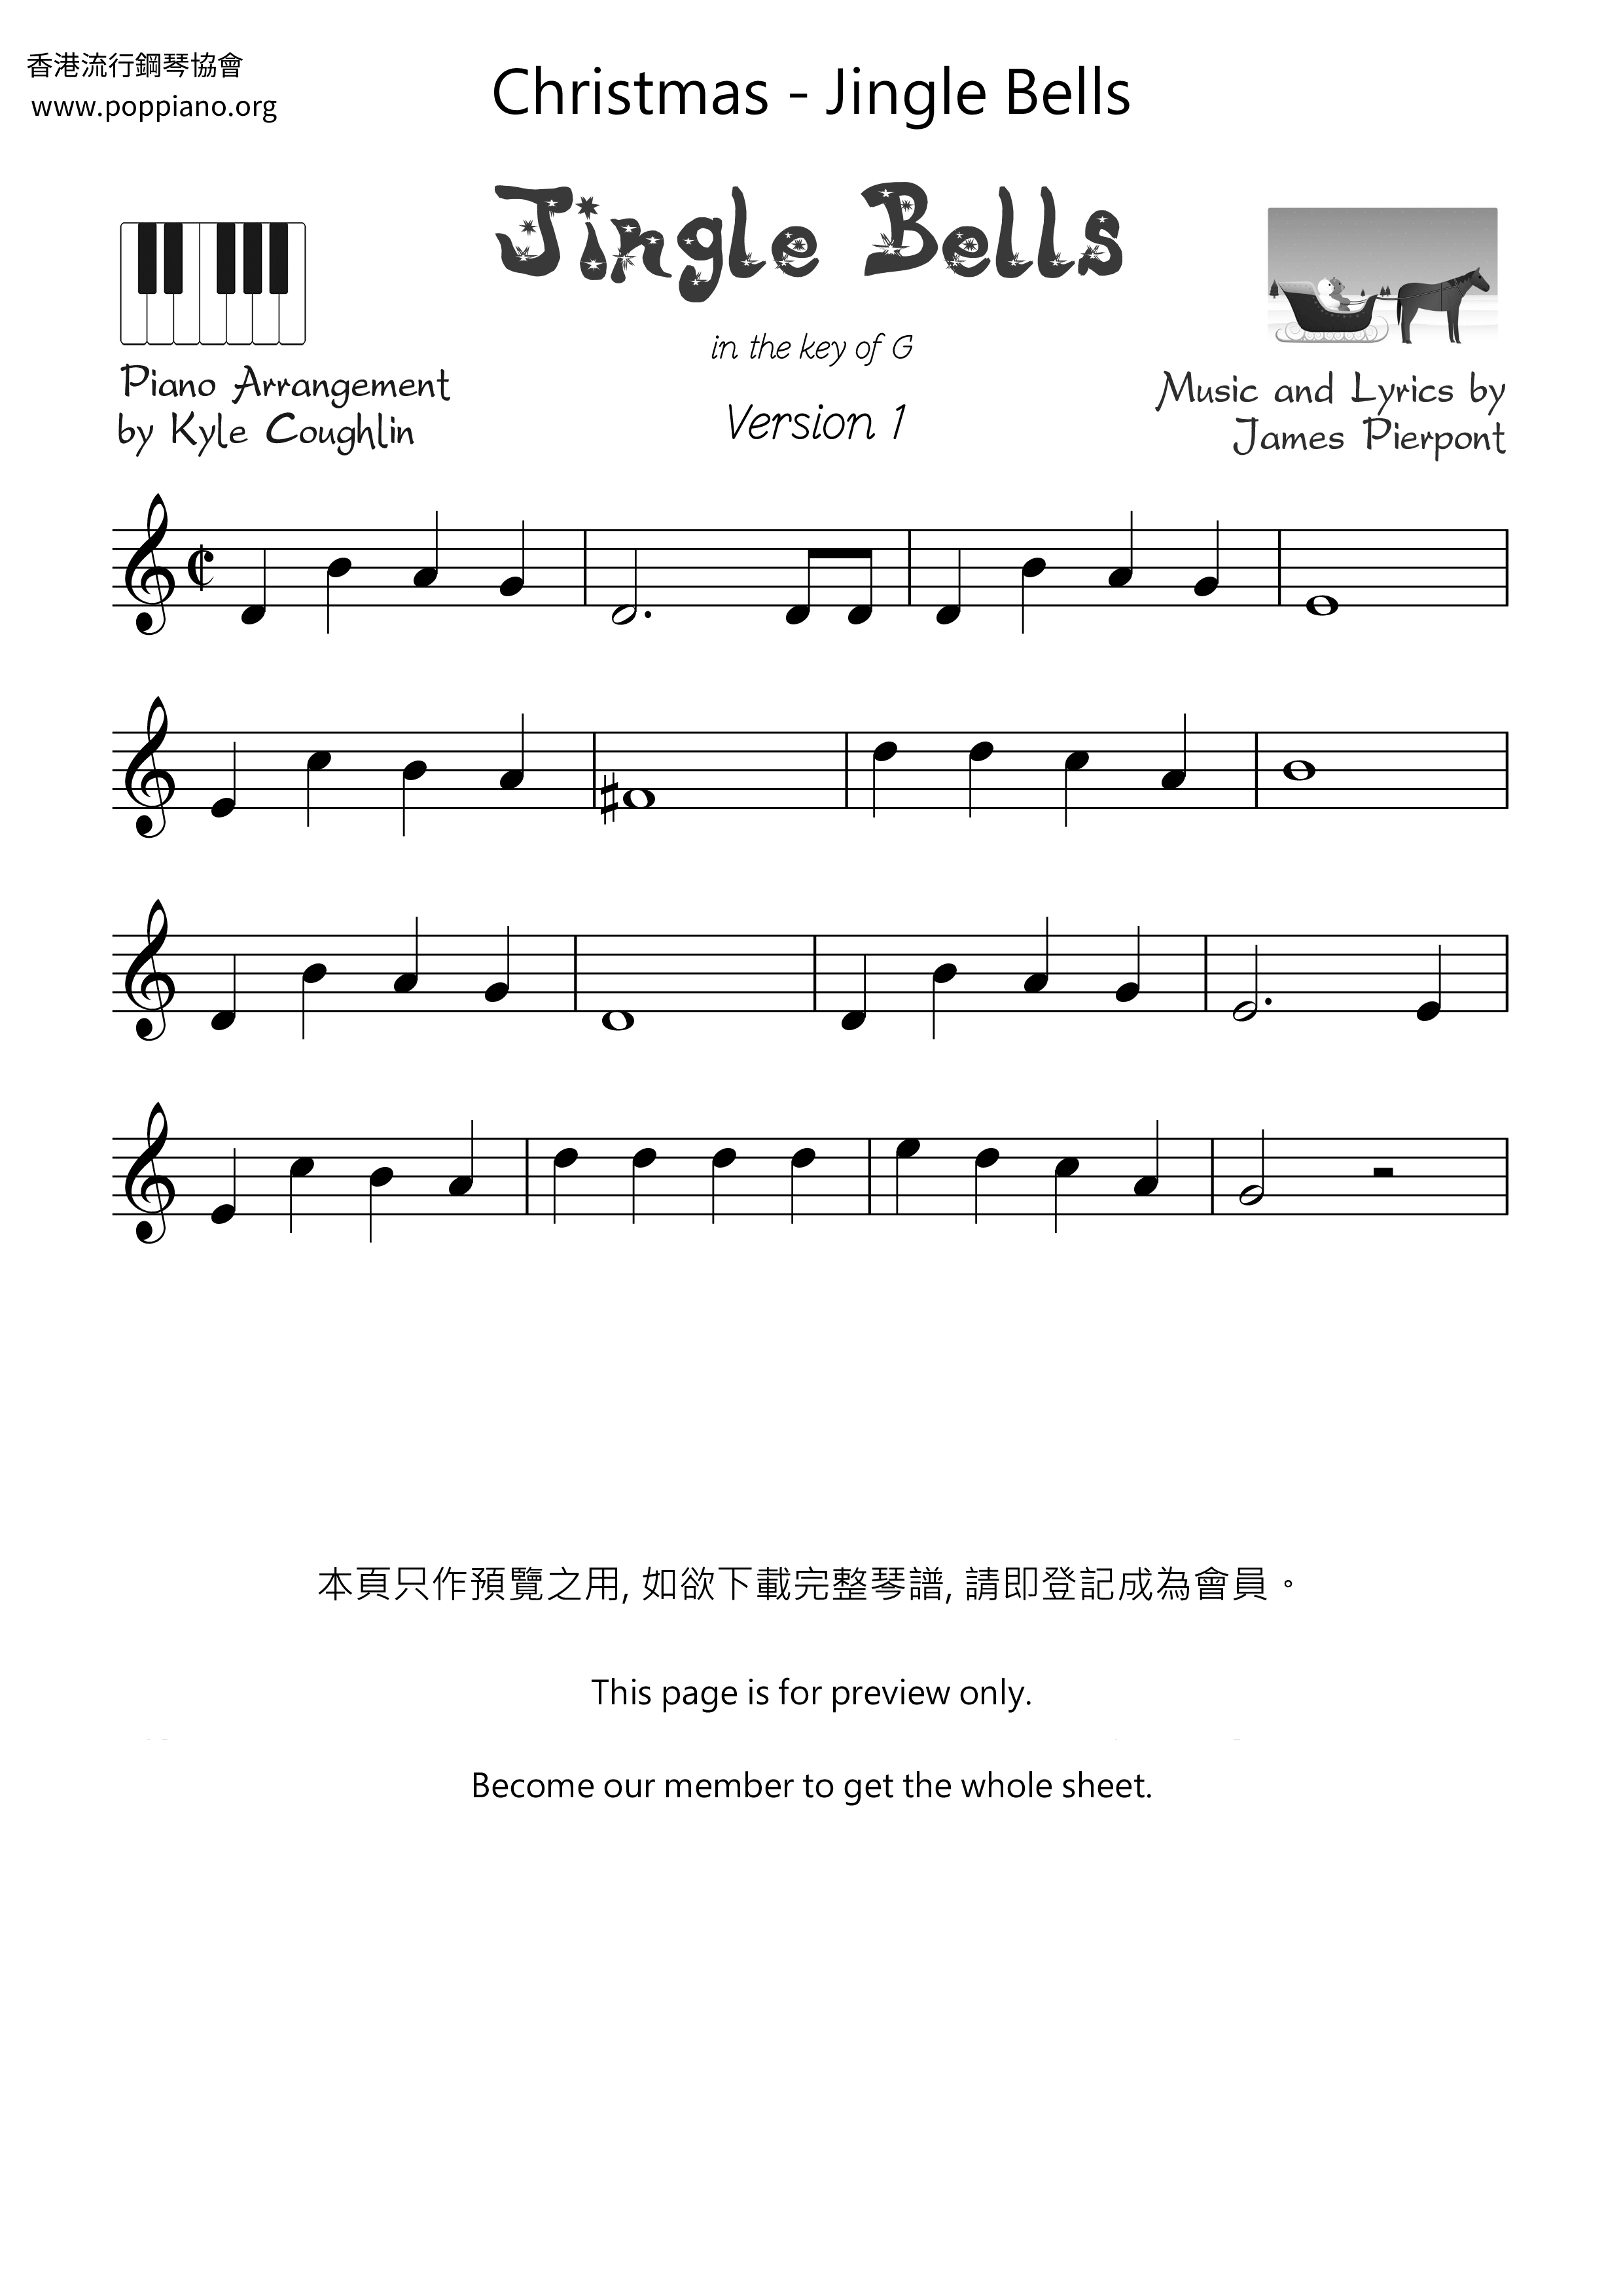 Christmas Jingle Bells Violin Score Pdf Free Score Download